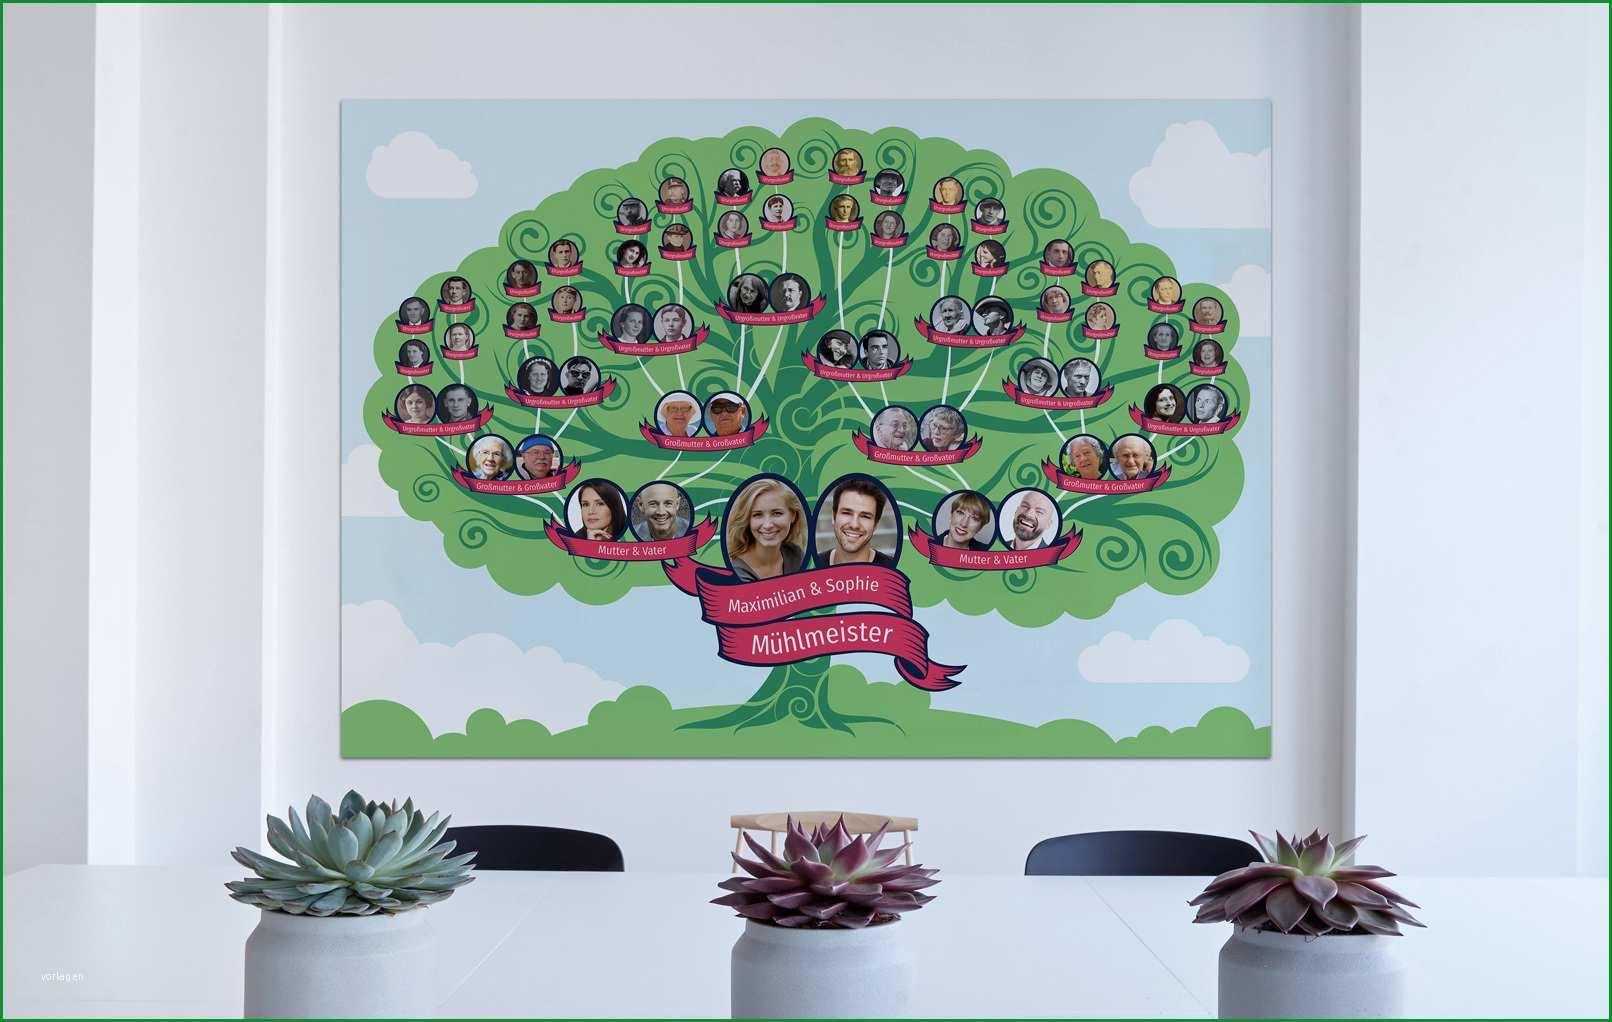 illustrativegrossflaechige vorlagen fuer deinen familienstammbaum 501